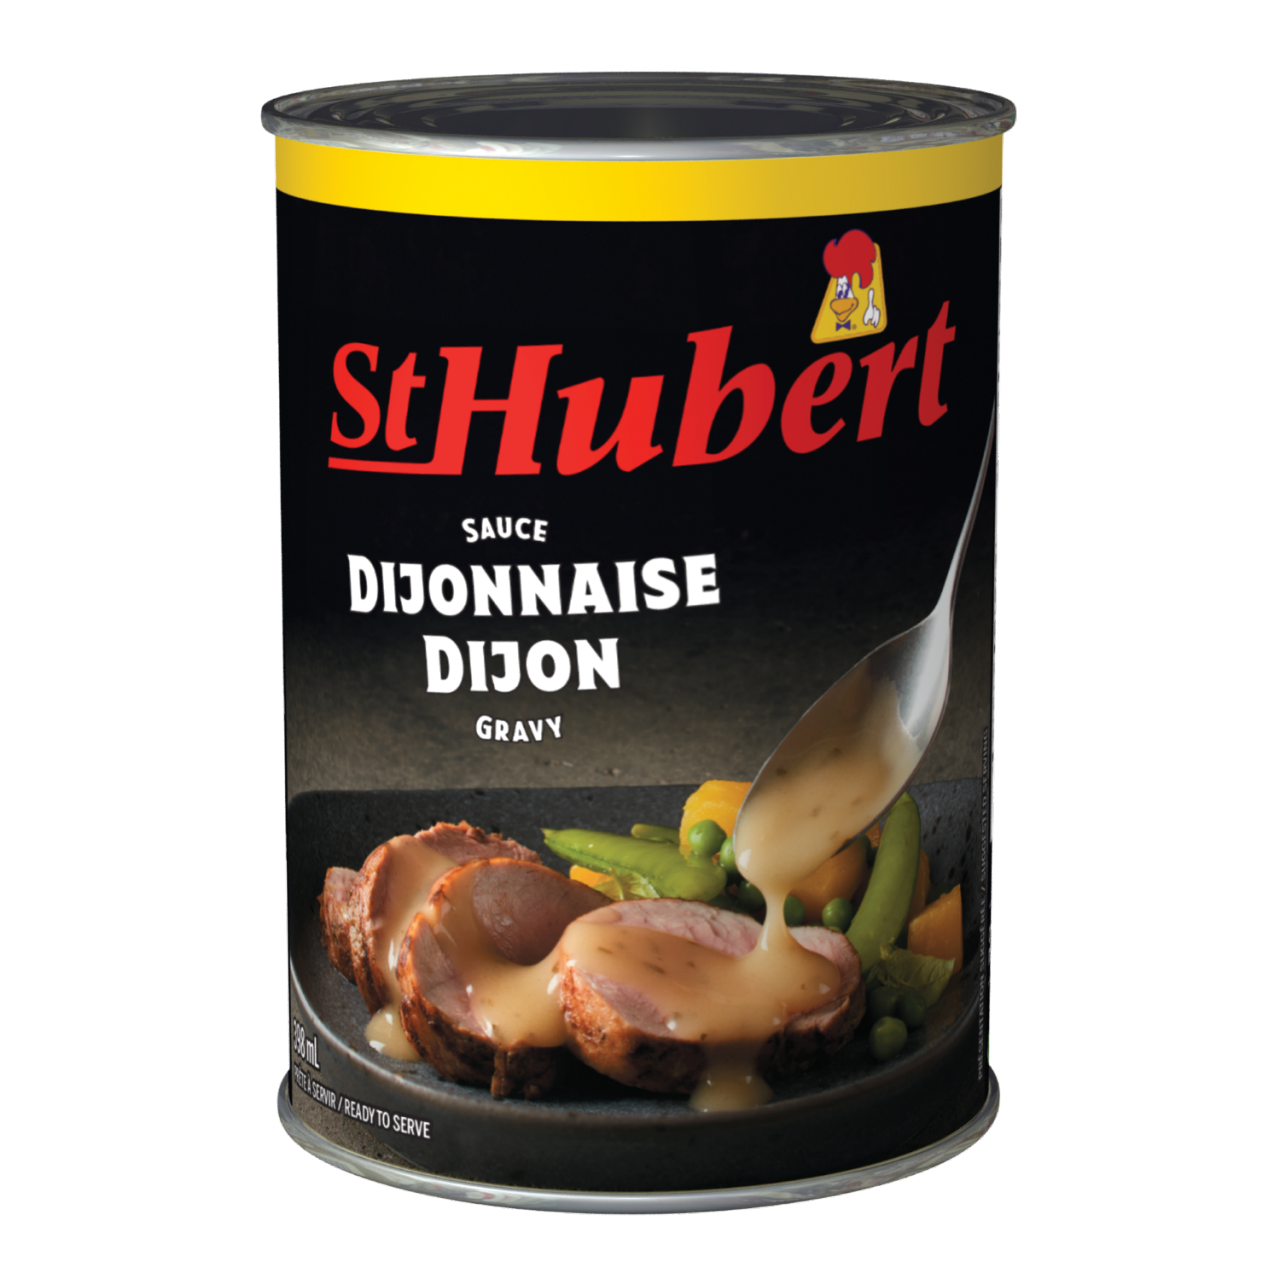 St-Hubert Dijon Sauce